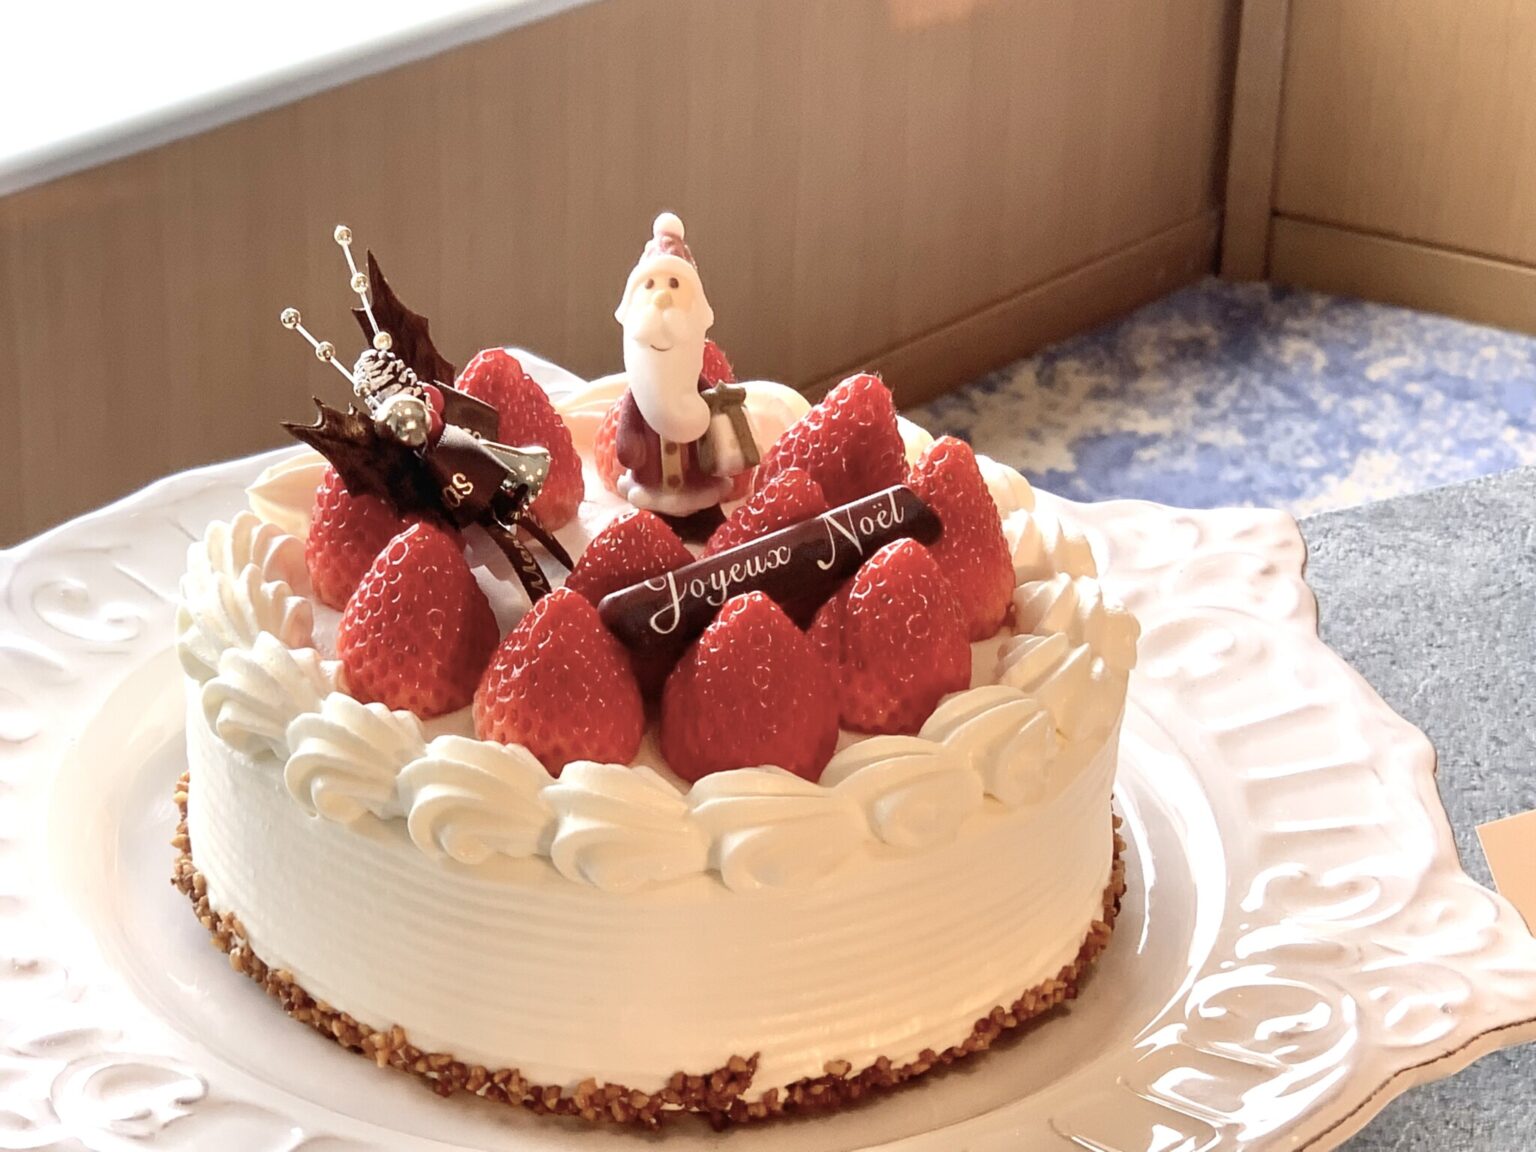 「嘉山農園の苺ショートケーキ」4号　直径12cm、高さ5cm（4,500円）/ 5号　直径15cm、高さ5cm（5,500円）。